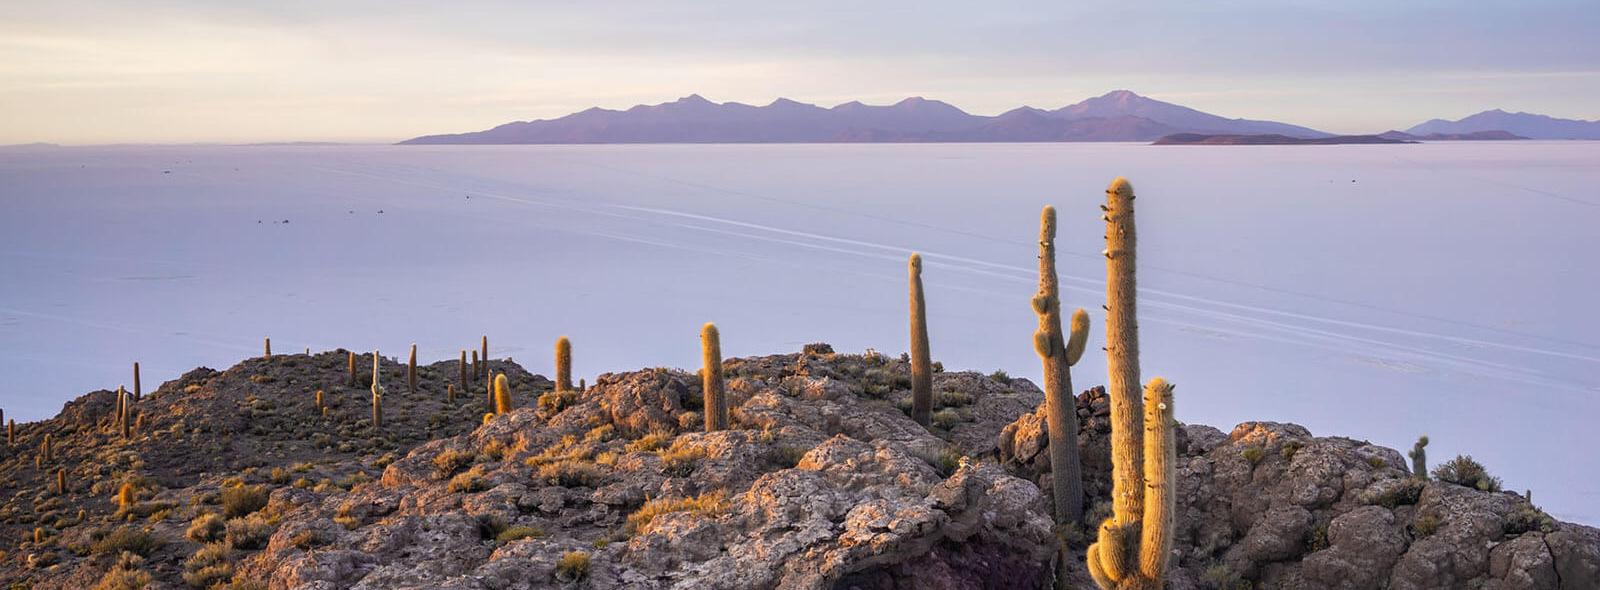 zoutvlakte bolivia tegen zonsondergang met cactussen